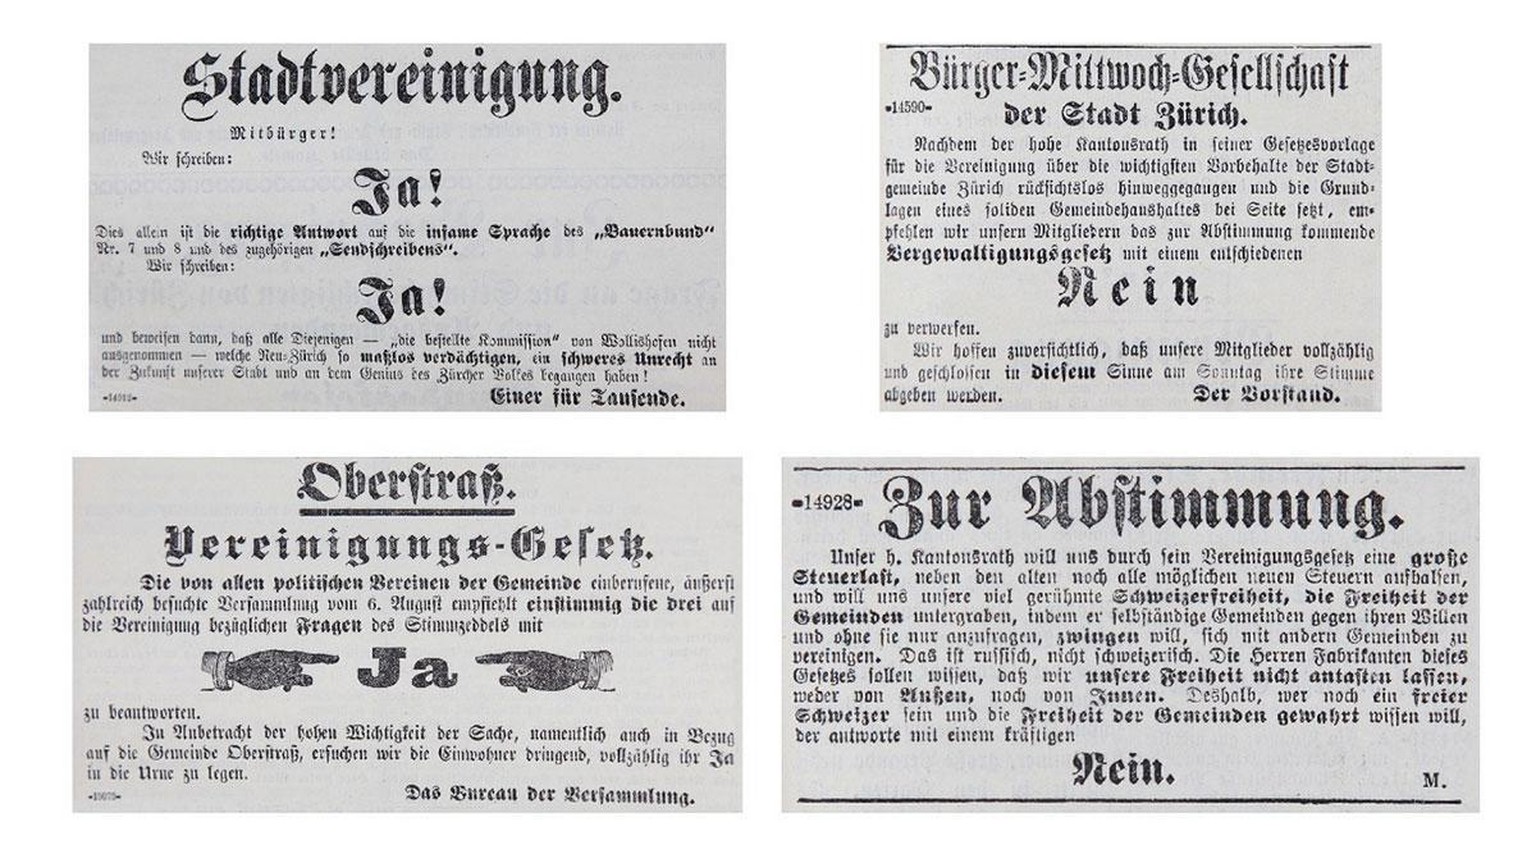 Nicht alle wollten die Eingemeindung. Abstimmungswerbung im Tagblatt der Stadt Zürich, 1891.
https://www.stadt-zuerich.ch/portal/de/index/portraet_der_stadt_zuerich/digitale-zeitreise/politik.html#&am ...